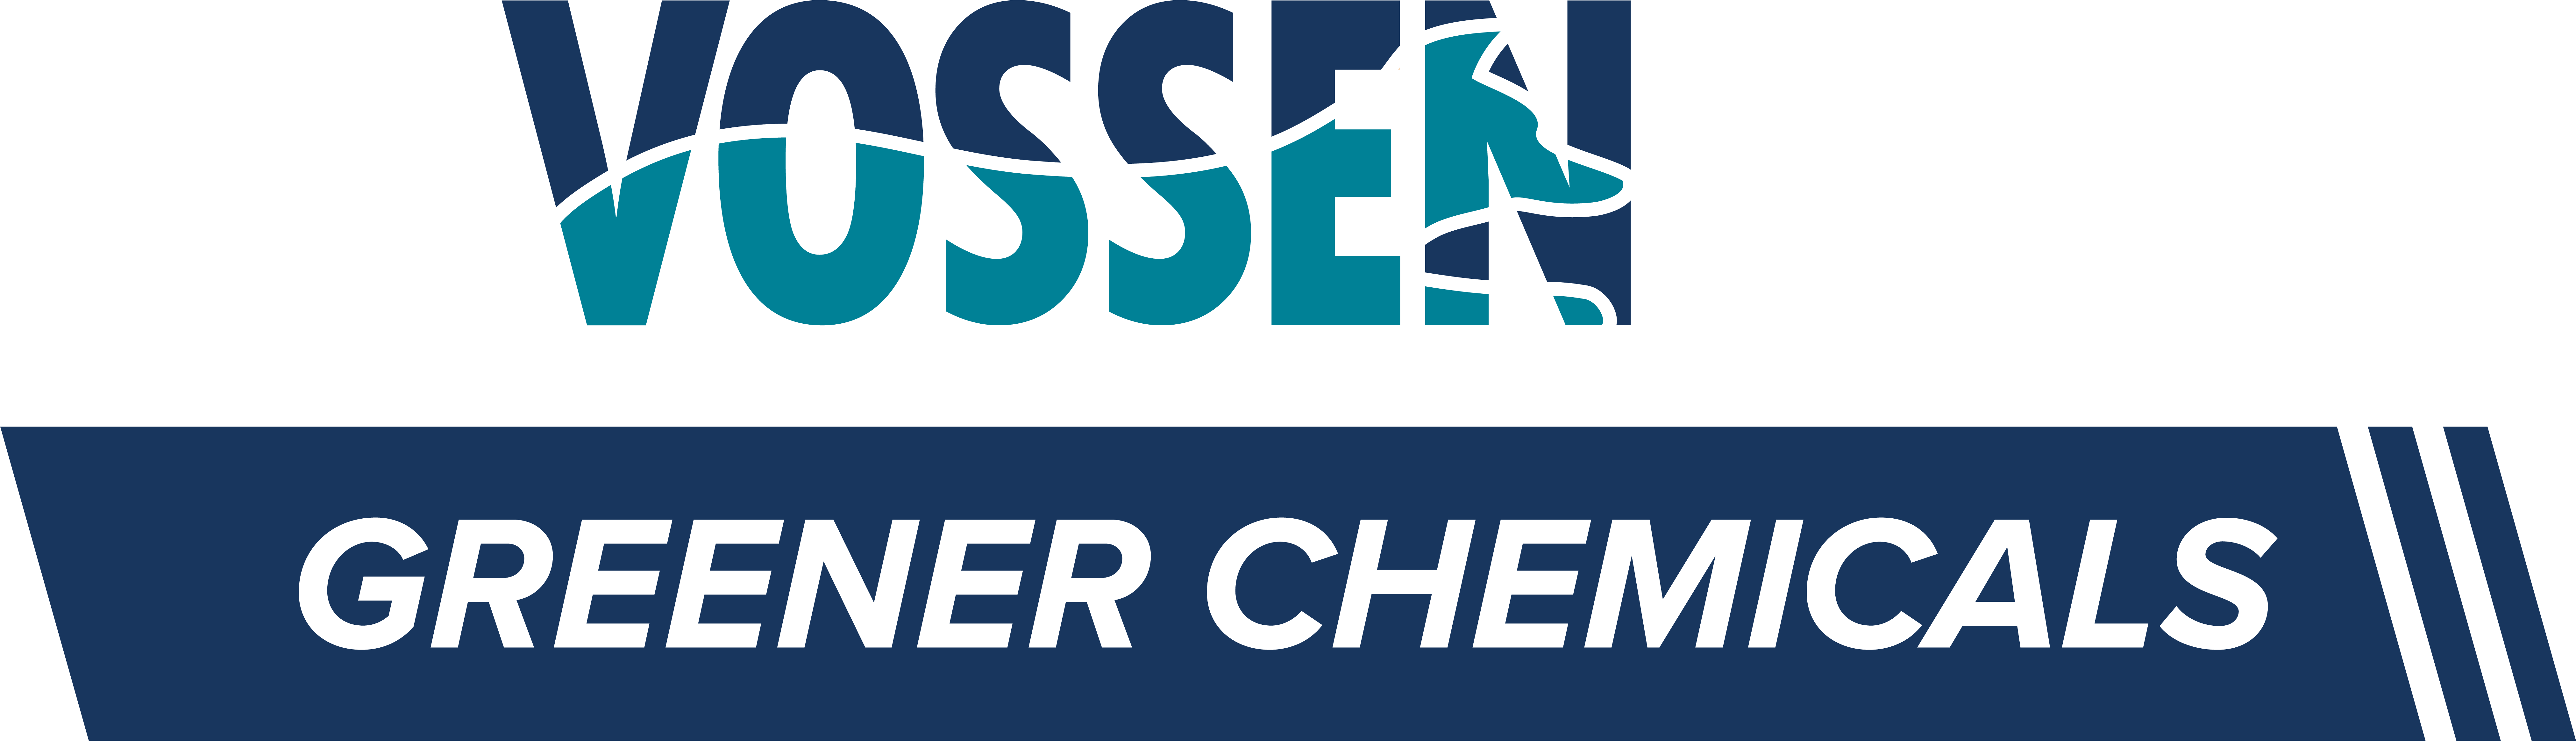 Opiniones sobre Vossen Greener Chemicals